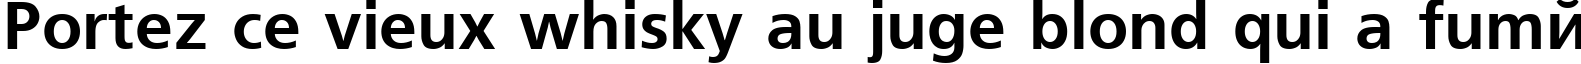 Пример написания шрифтом font179 текста на французском